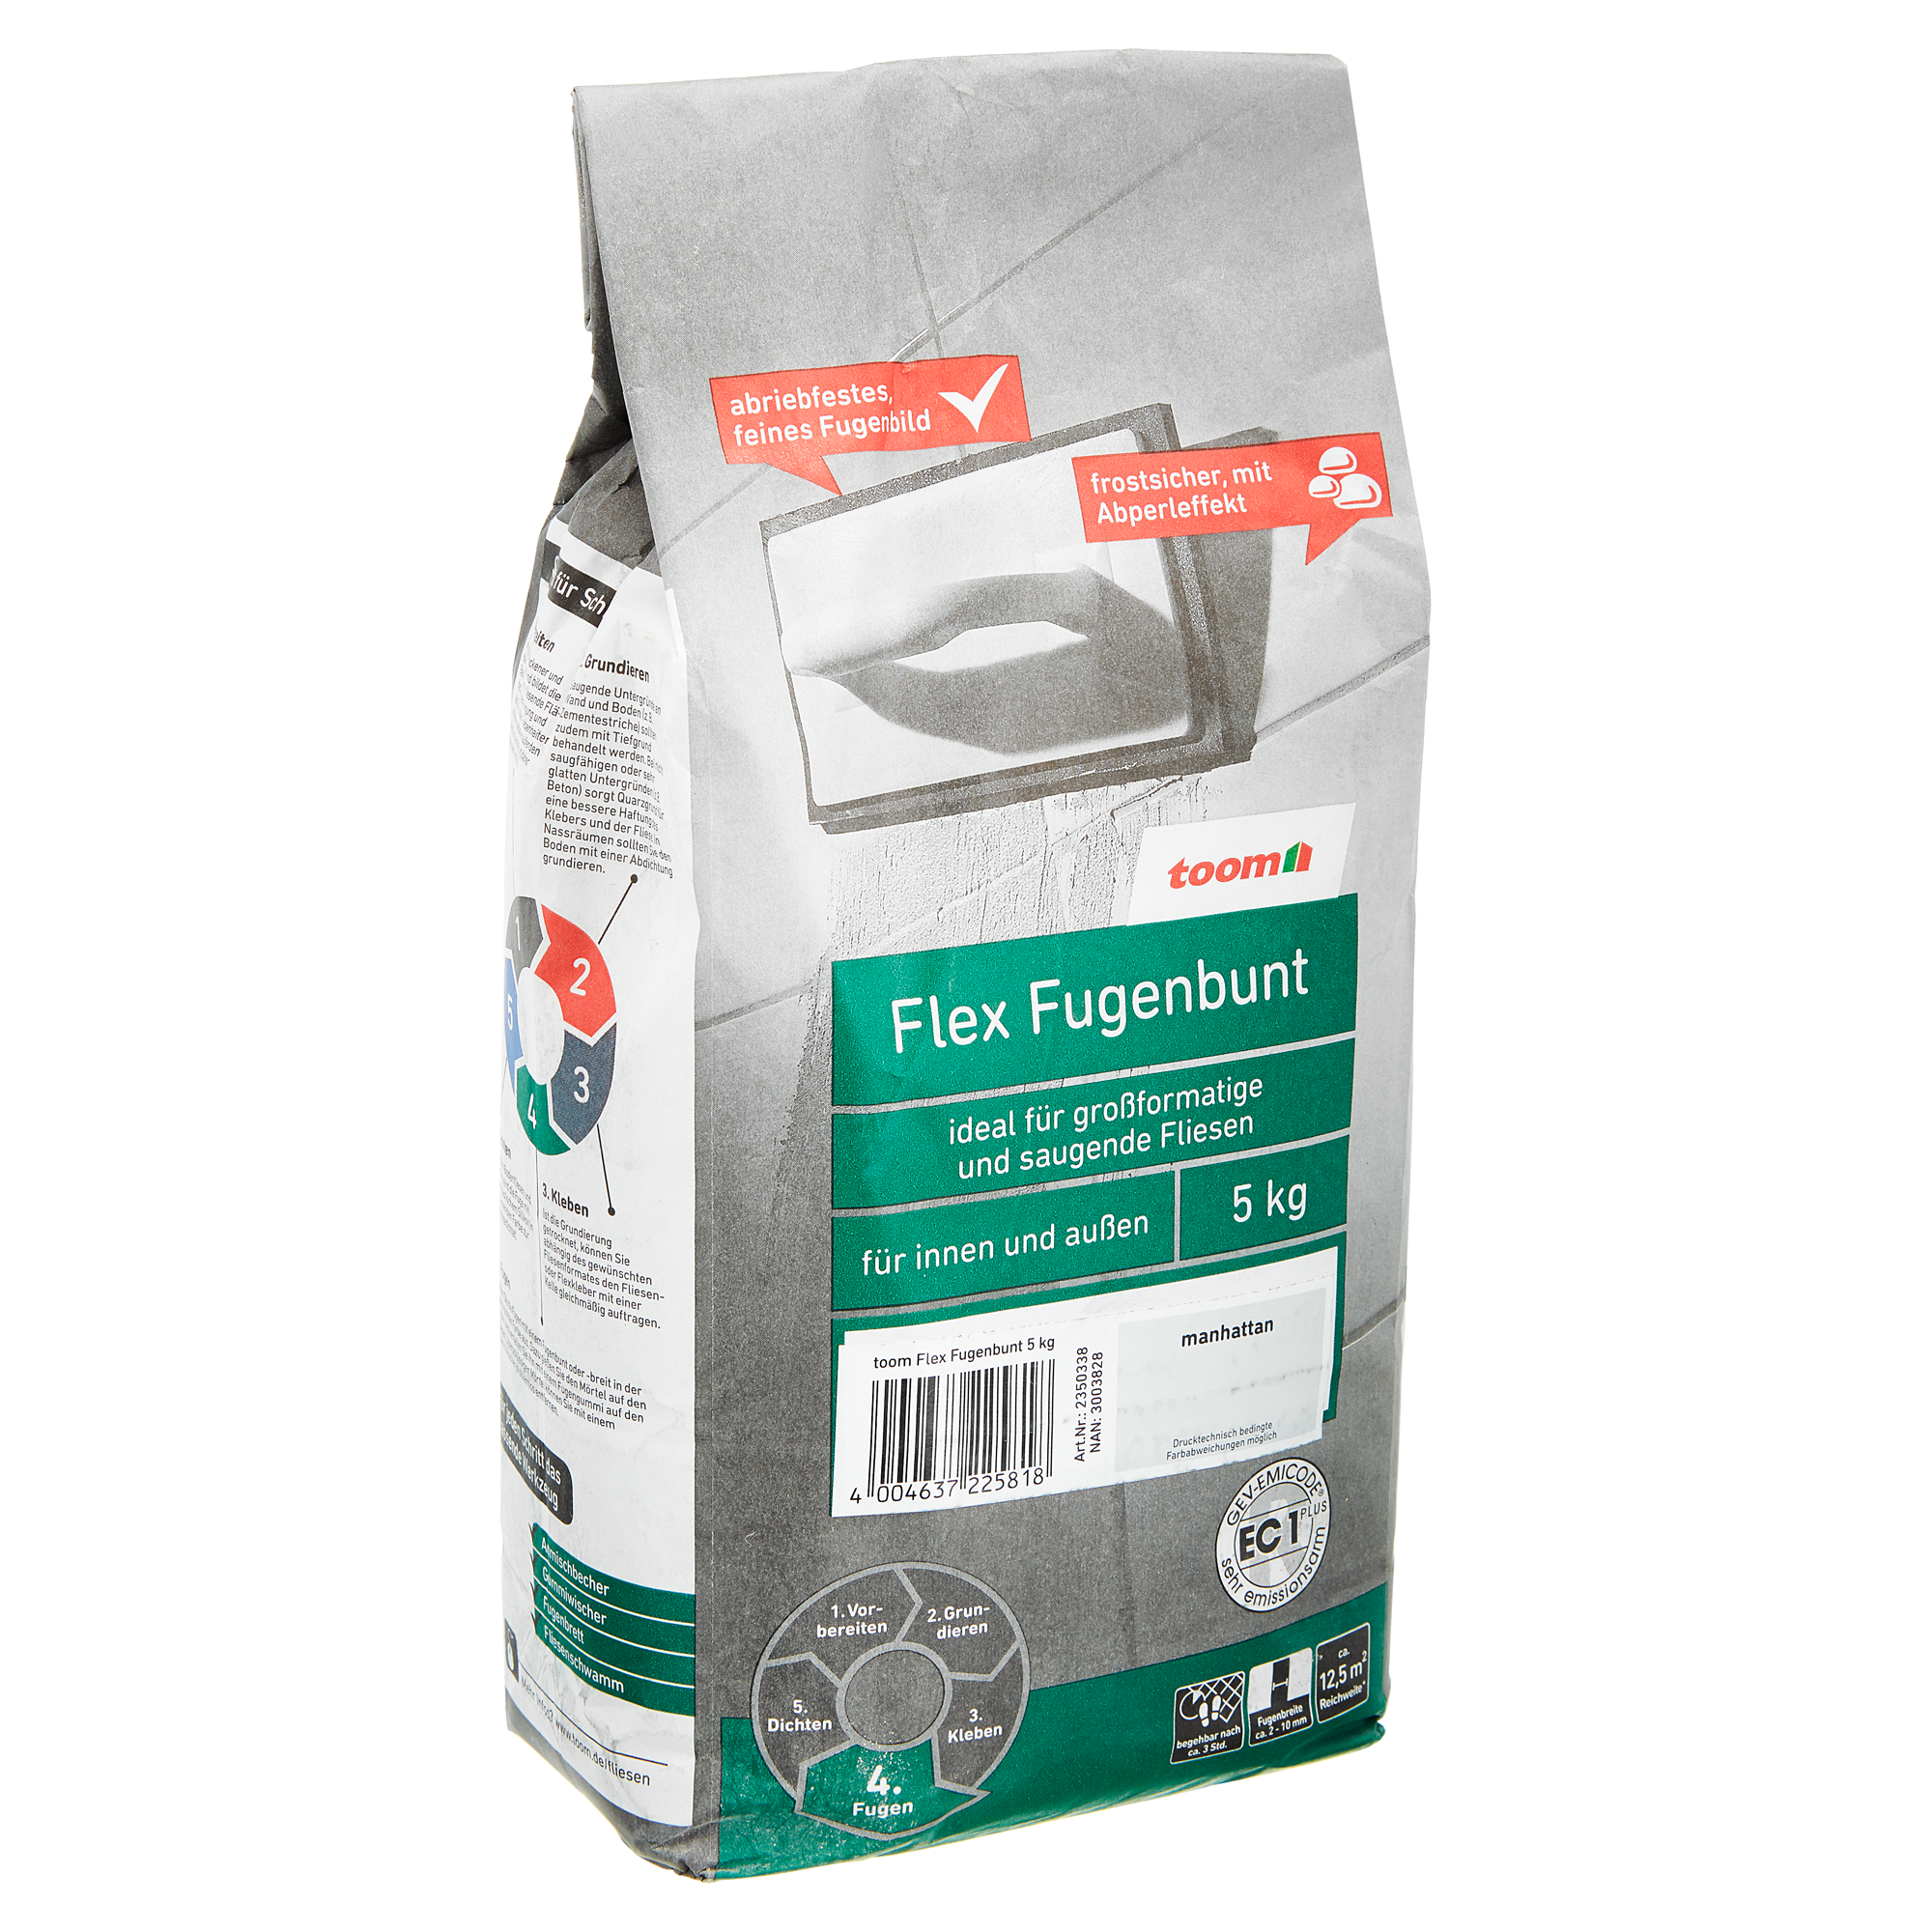 Flex Fugenbunt manhattan 5 kg + product picture